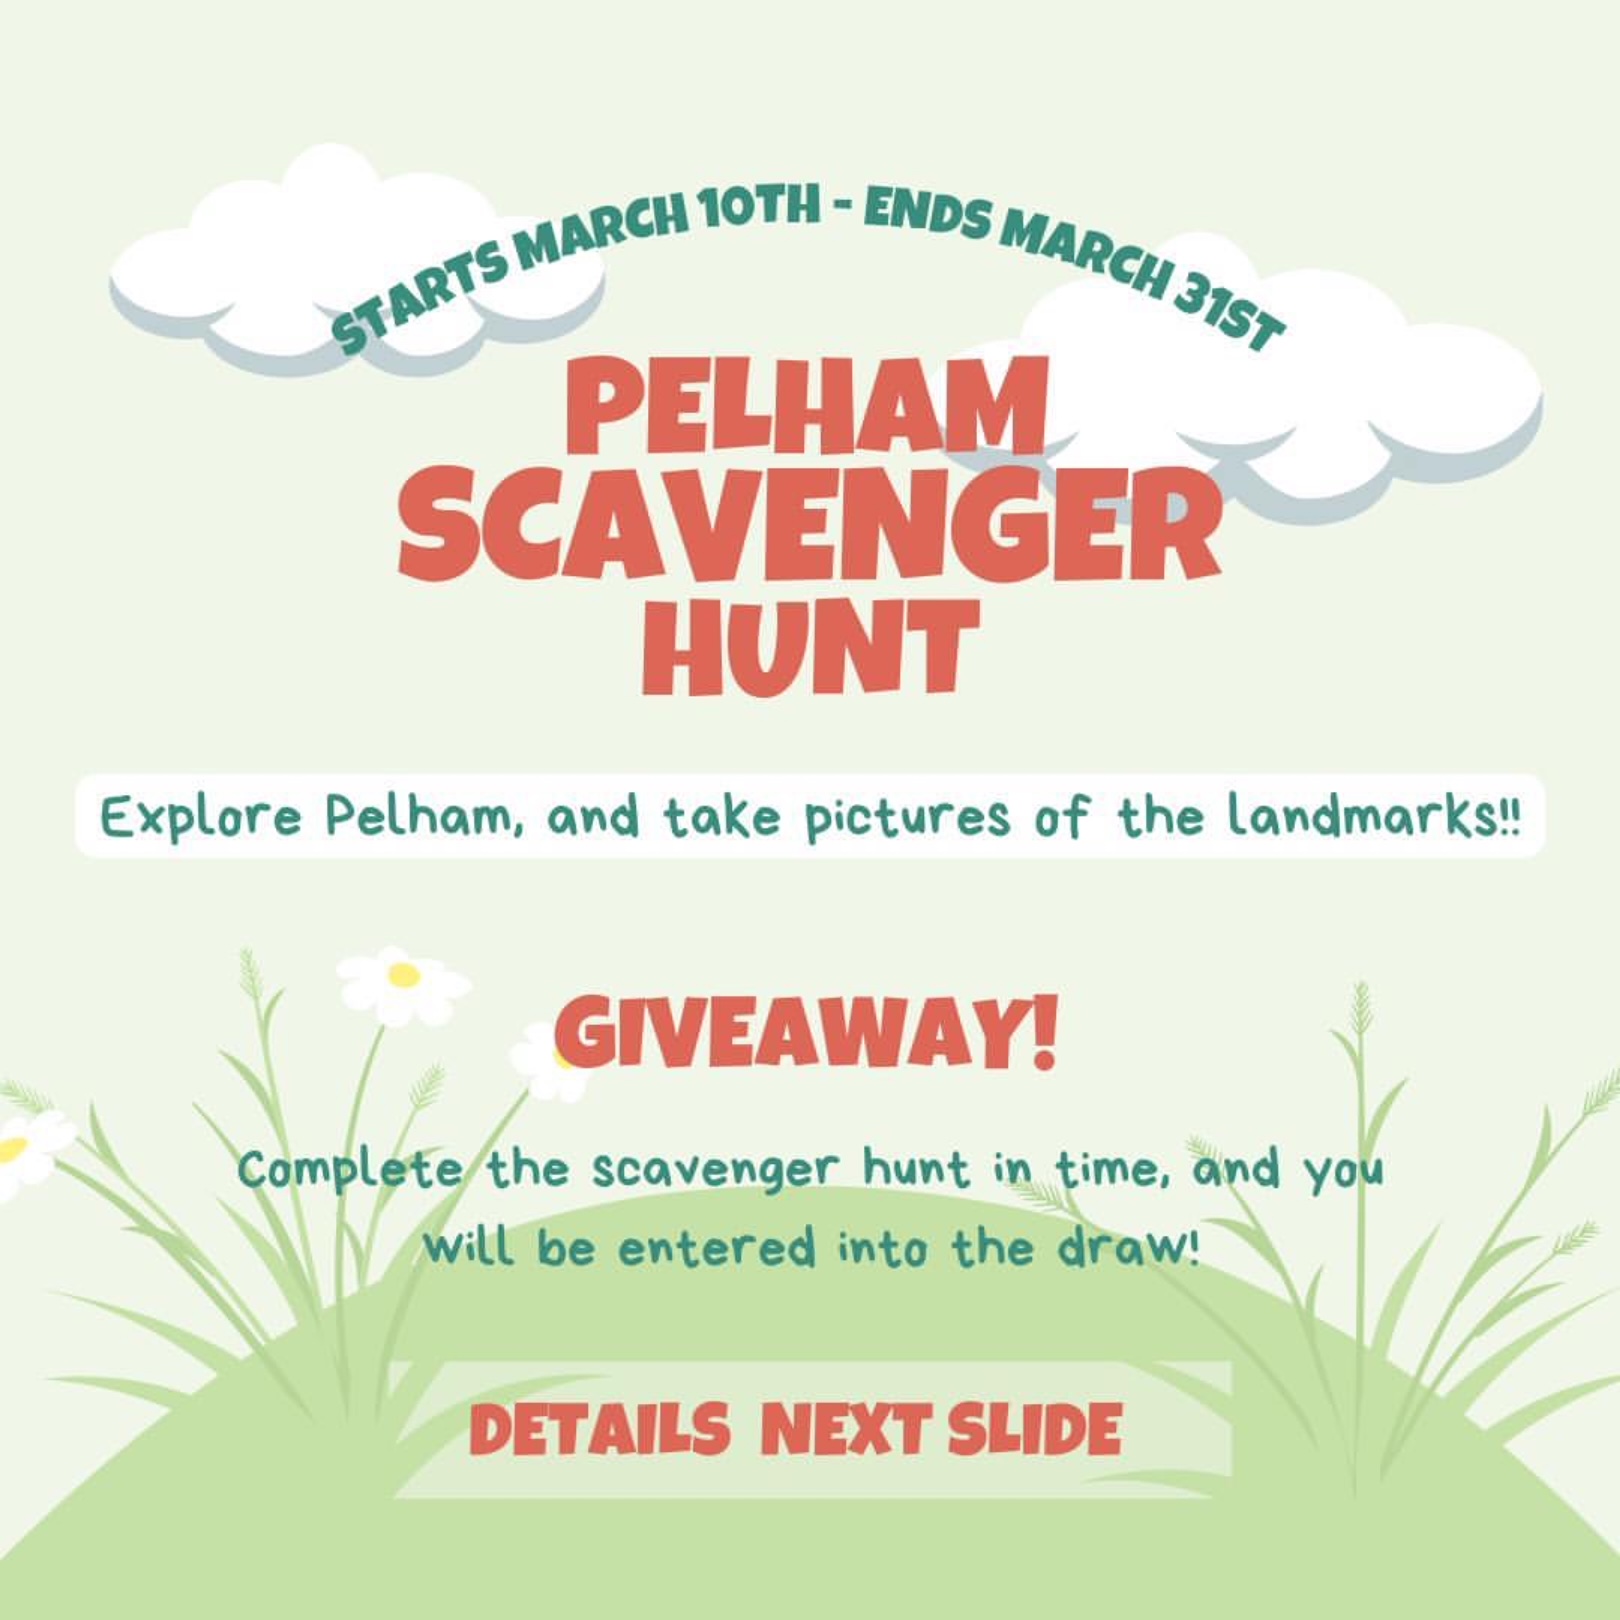 Join in the Pelham Scavenger Hunt!